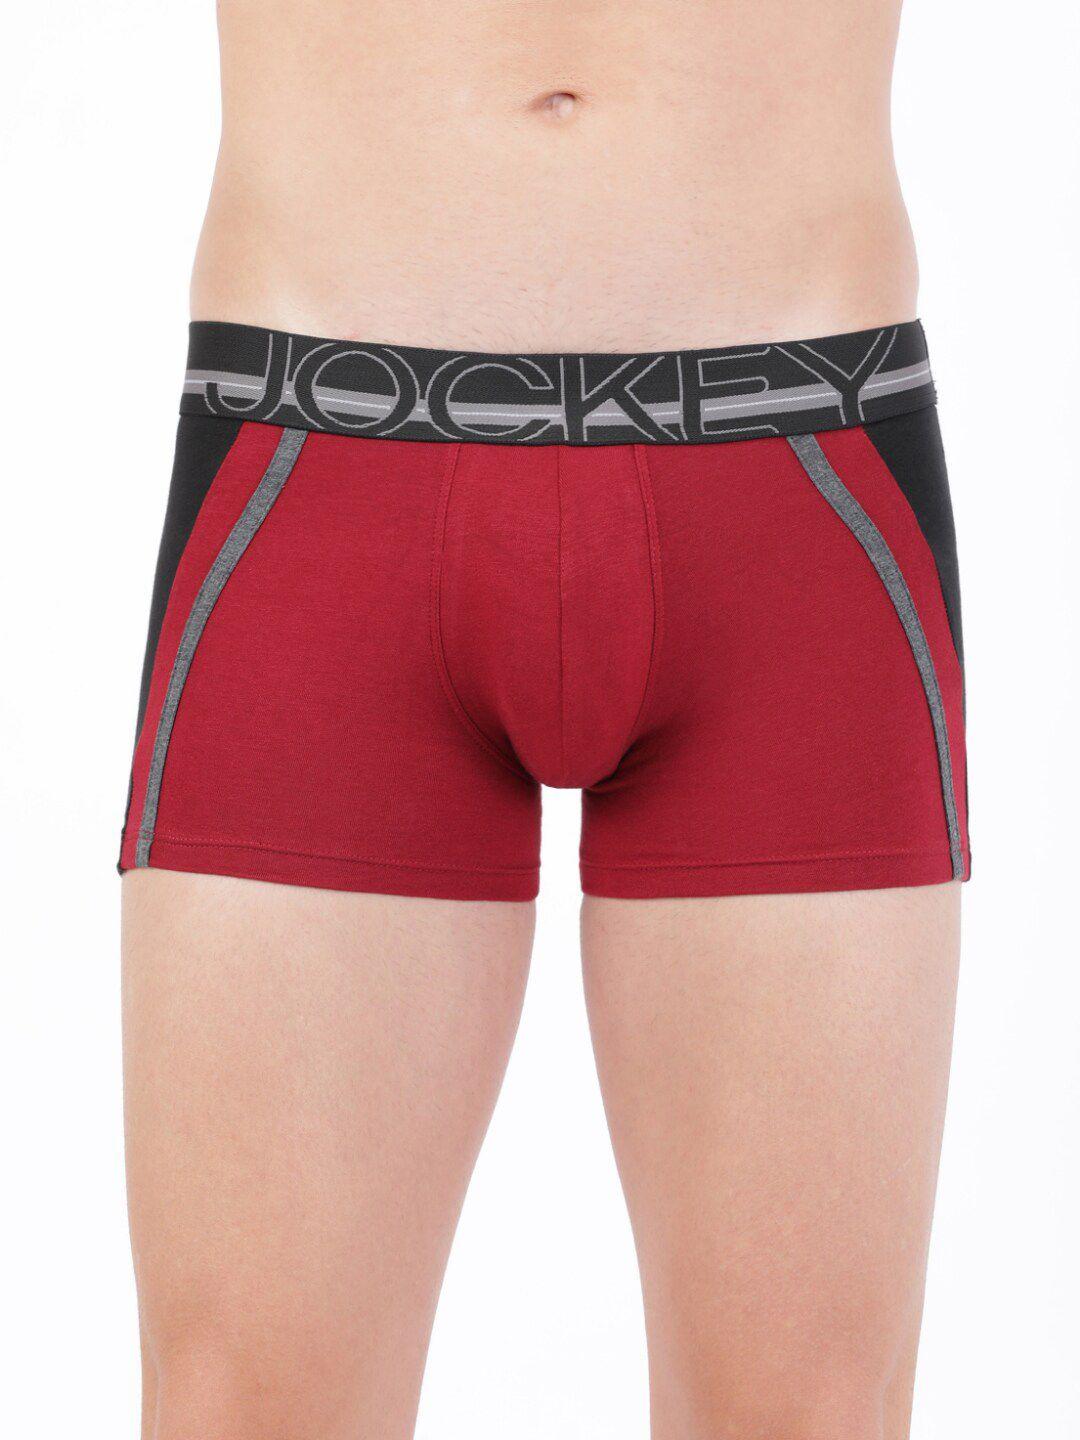 jockey men red & black colourblocked trunks us21-0105